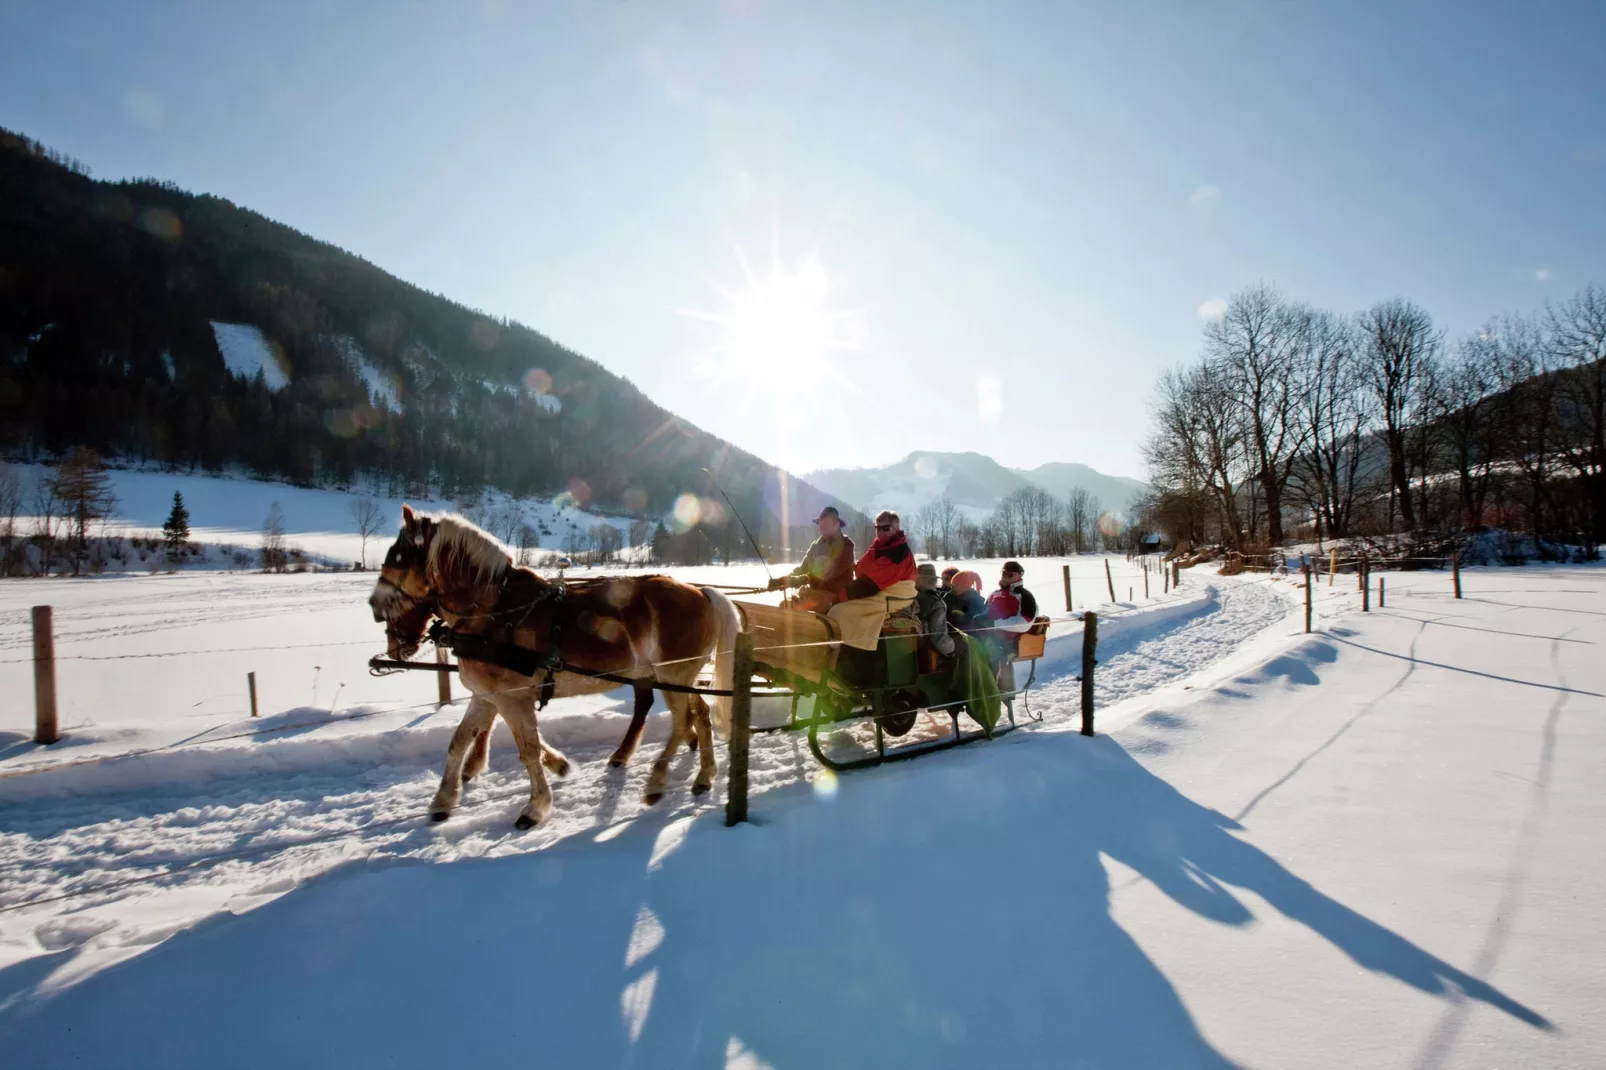 Chalet Bärenschanze-Gebied winter 5km